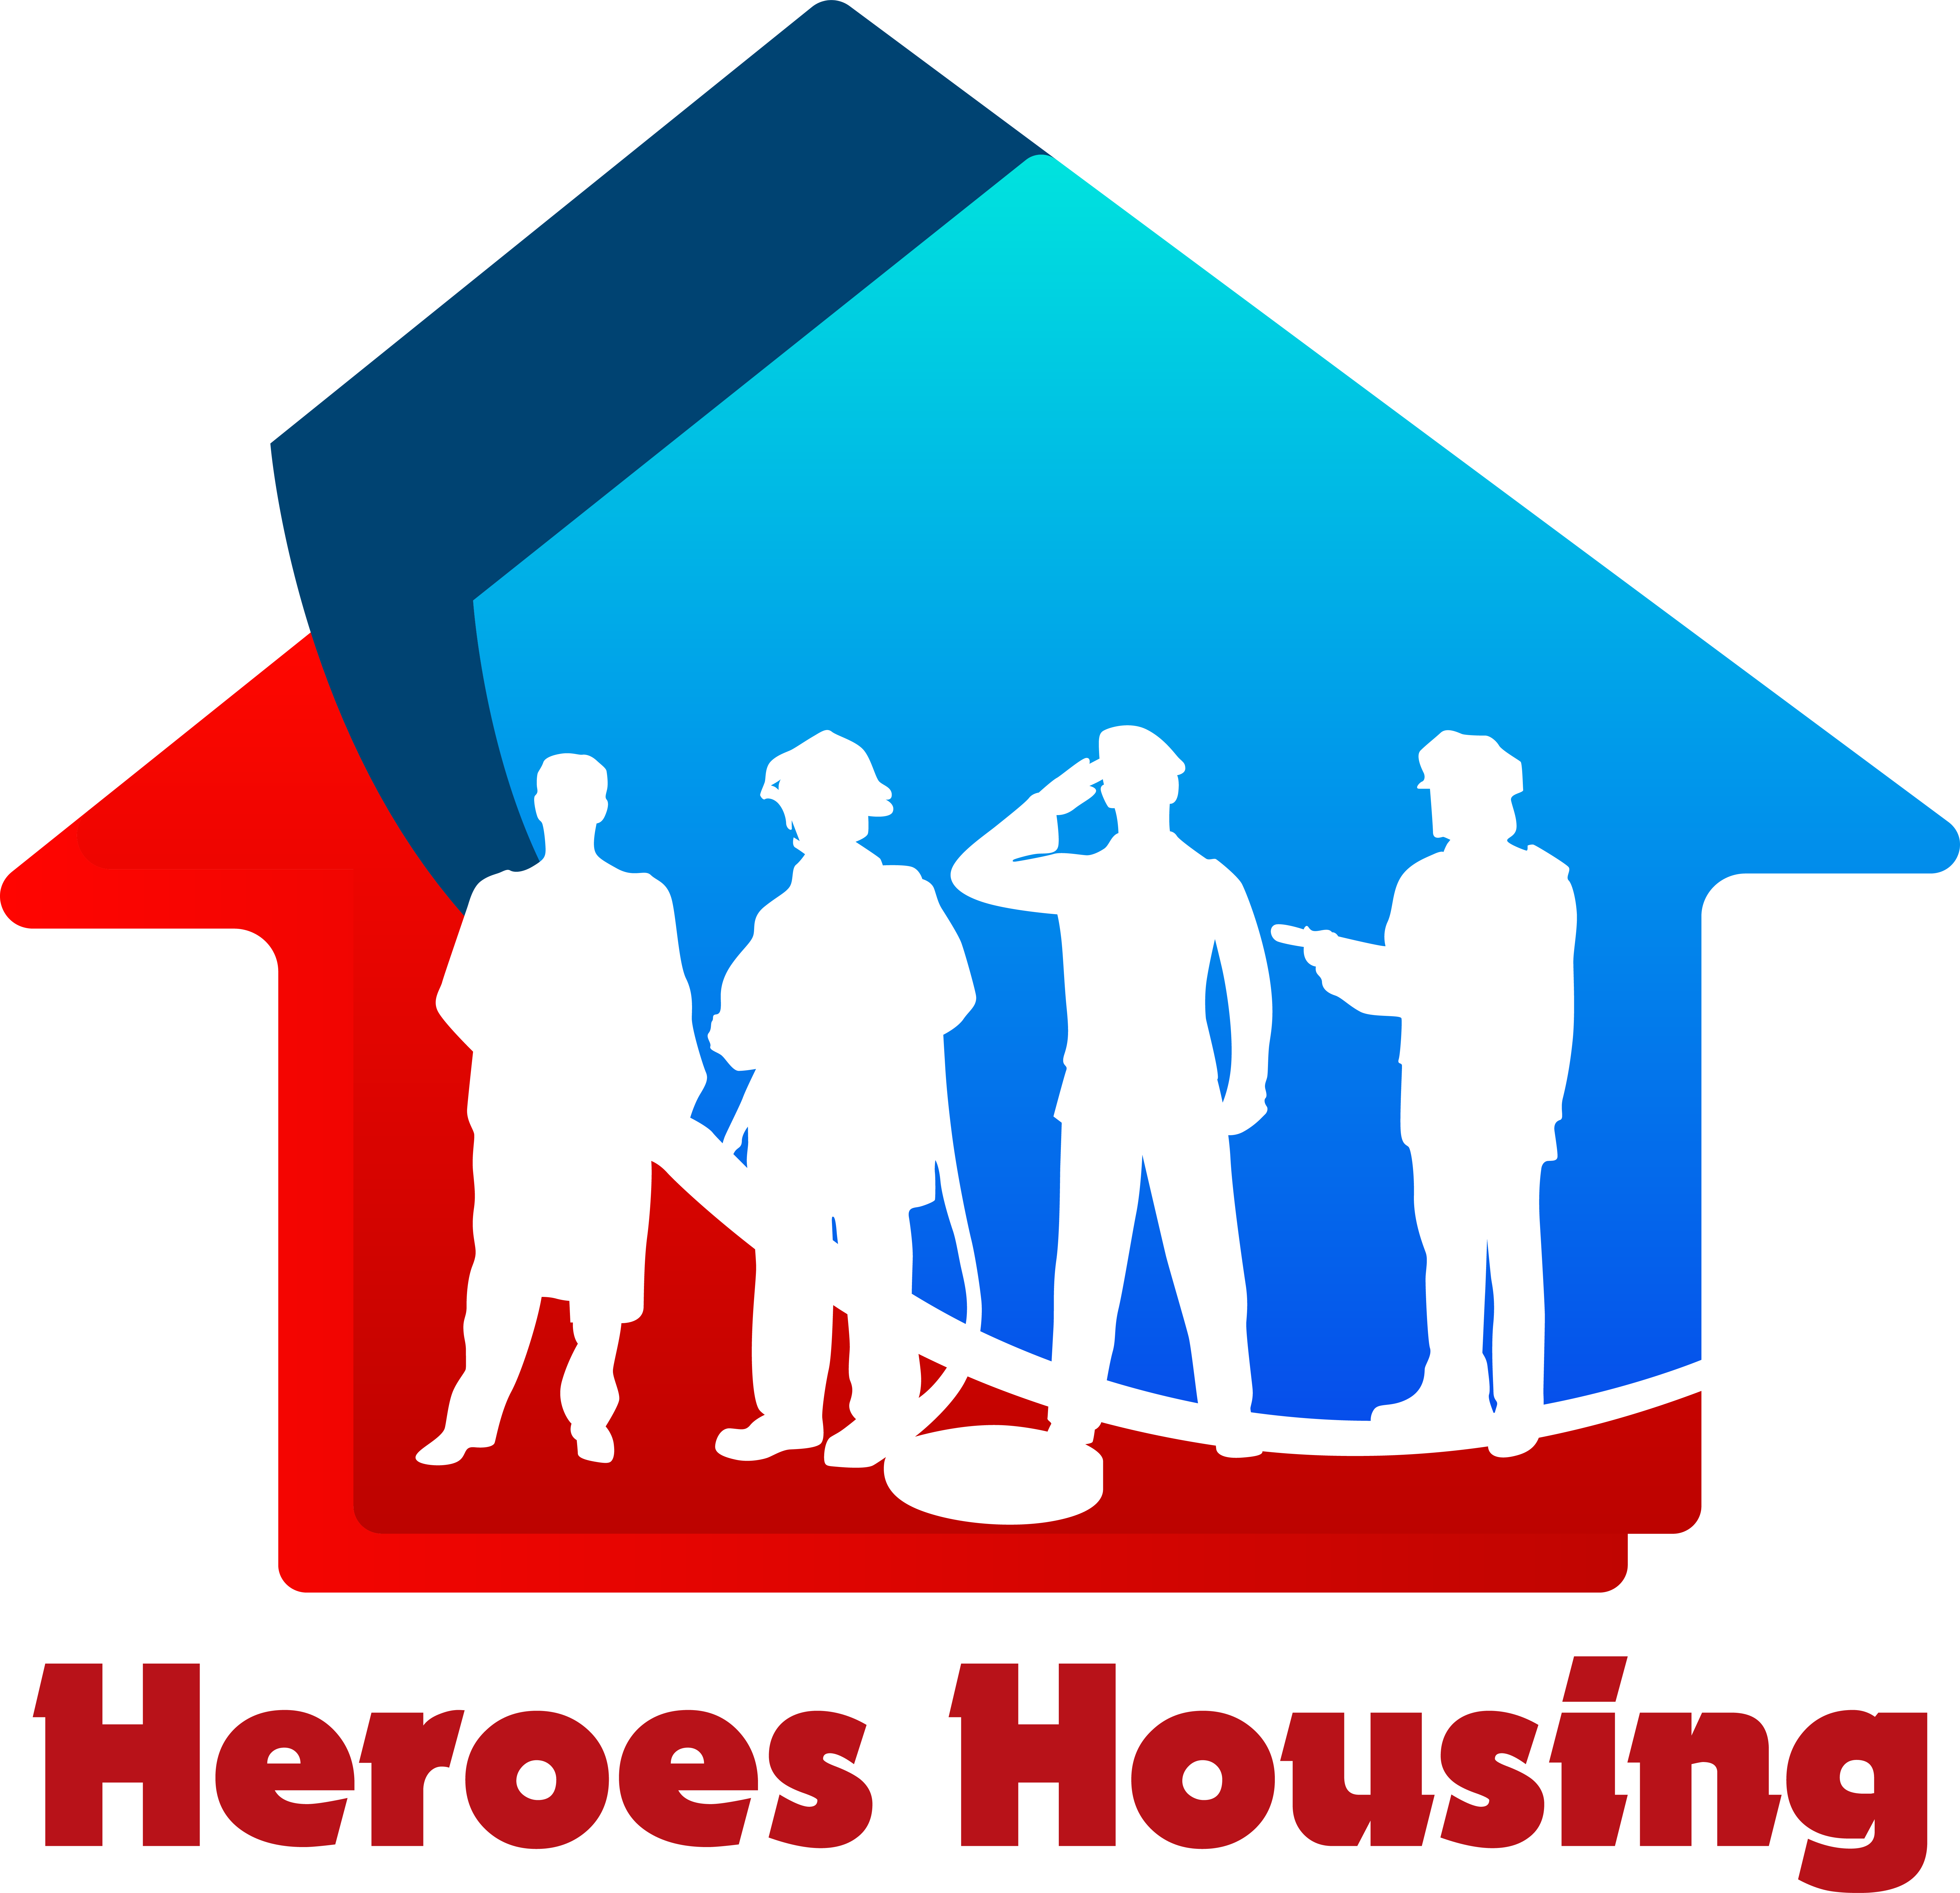 Heroes Housing